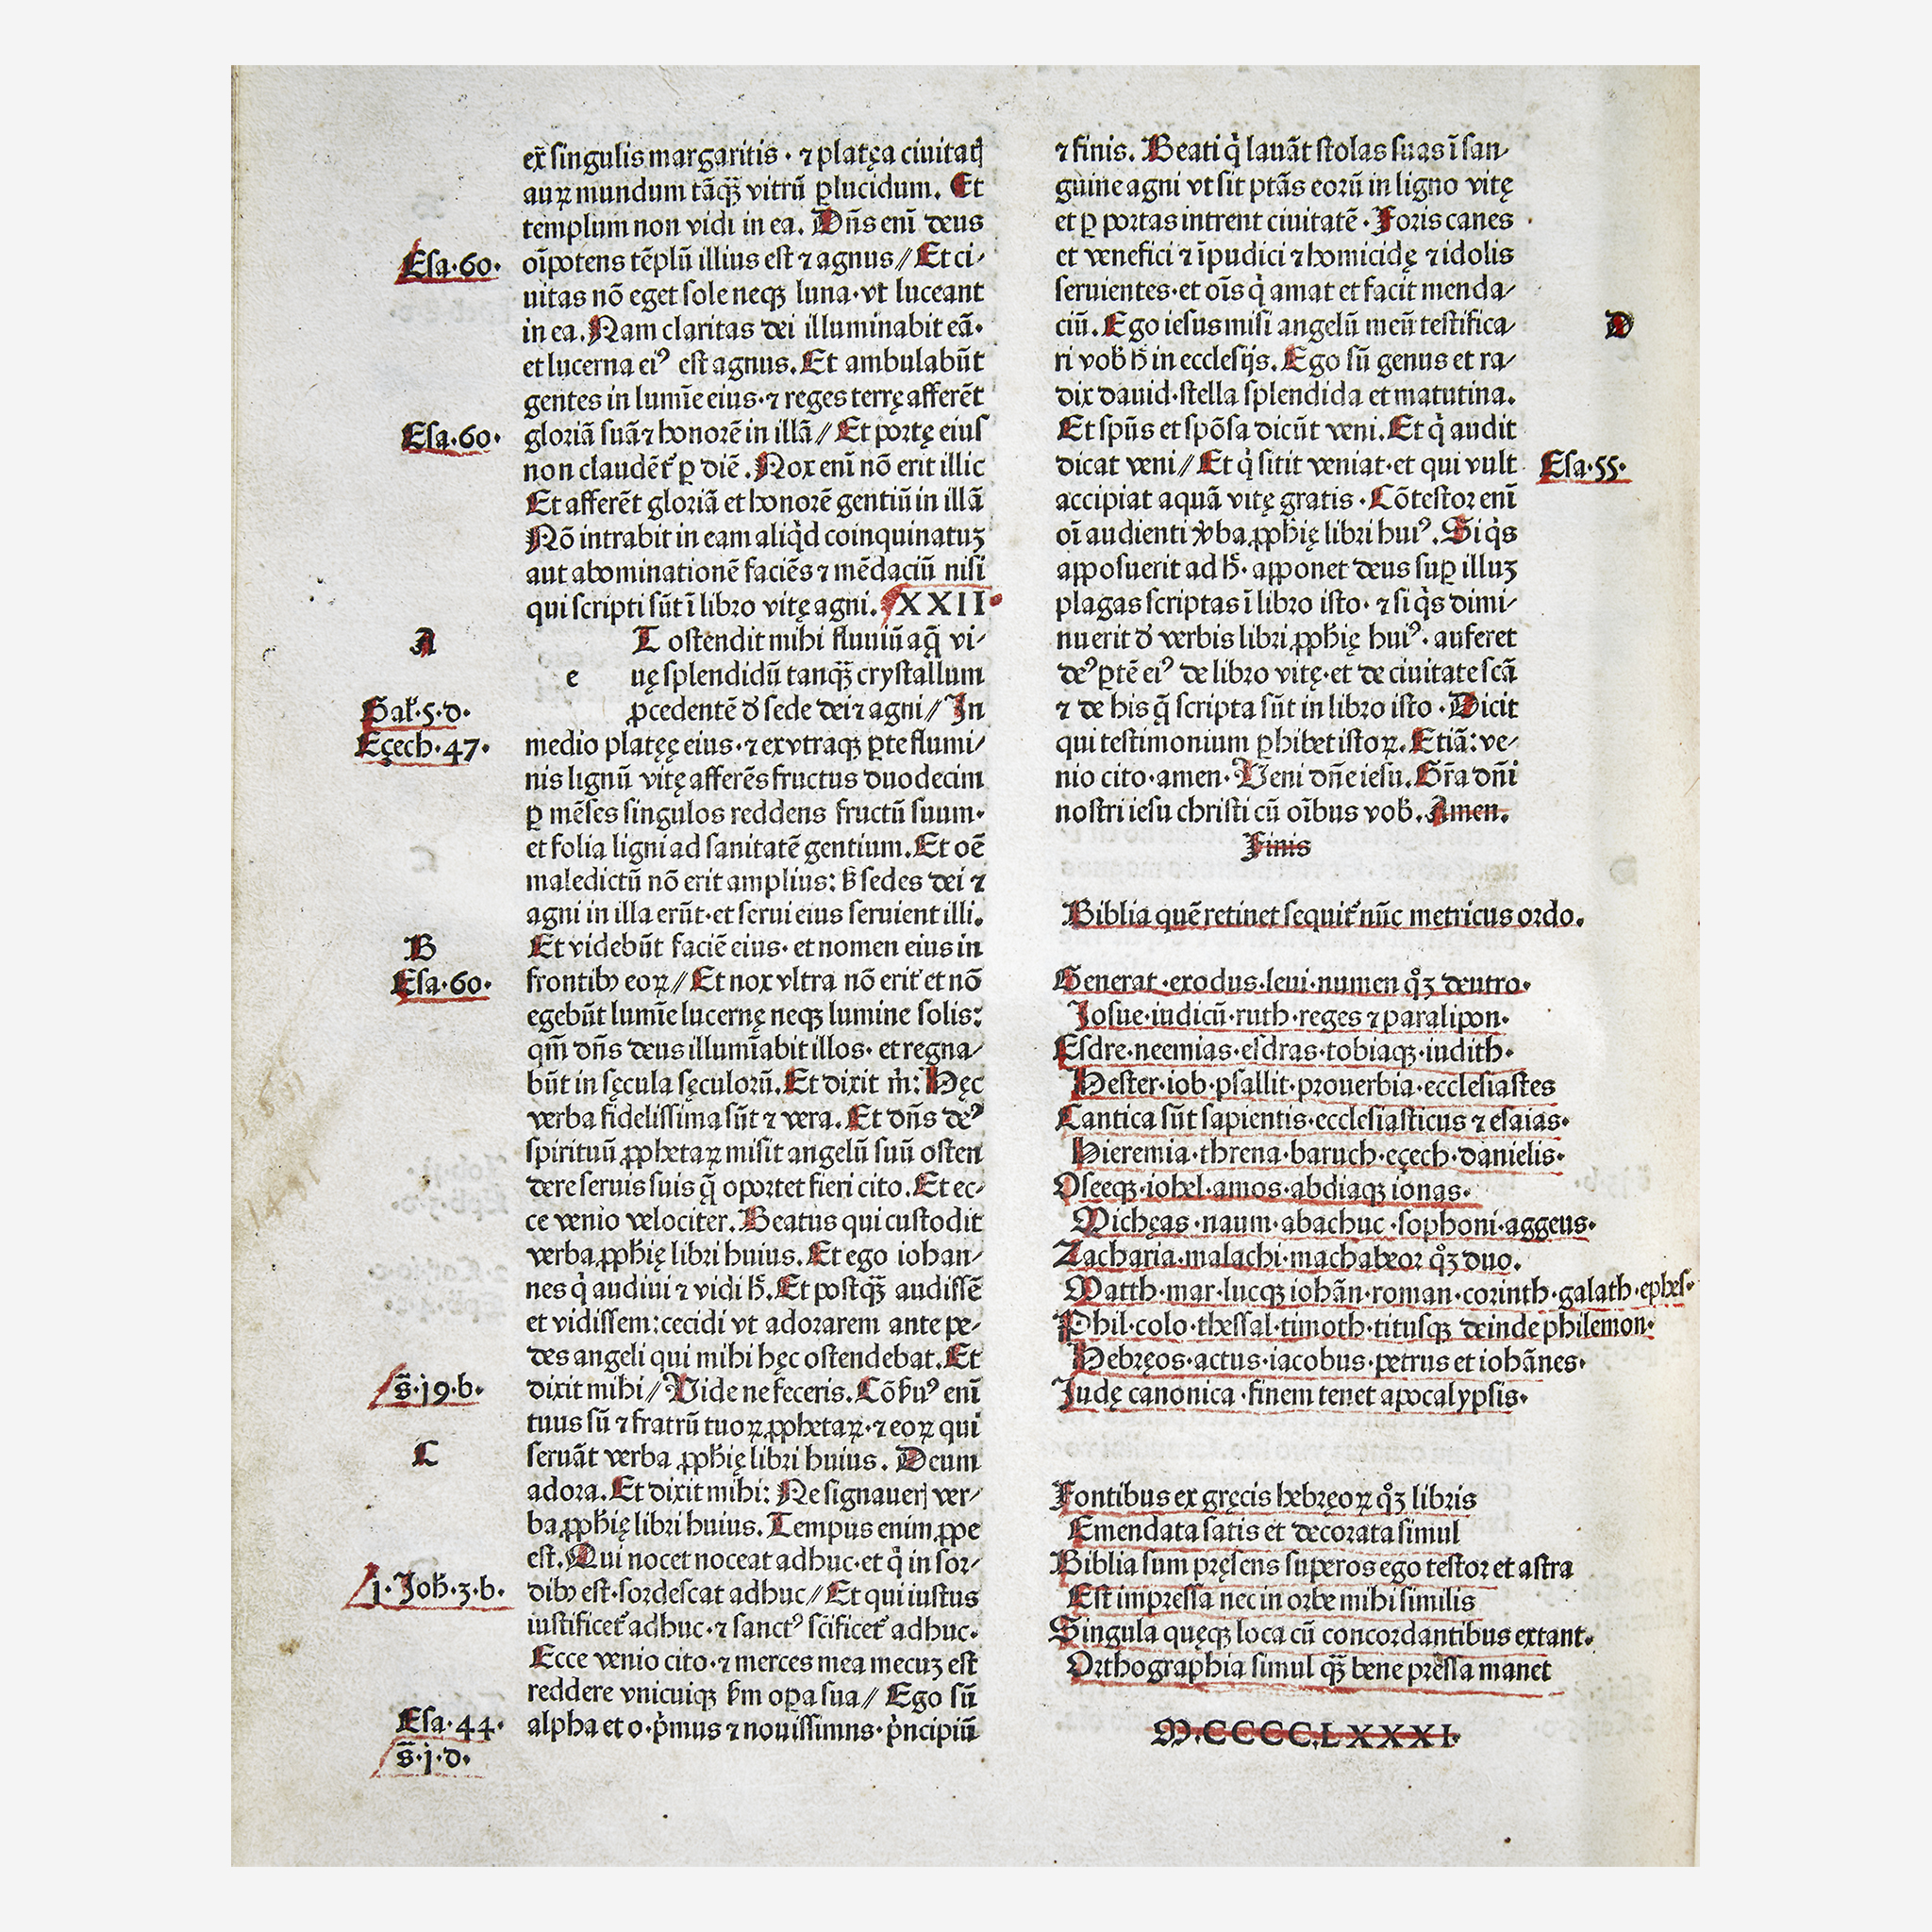 [Incunabula] Amerbach, Johann (printer), Biblia Latina - Image 4 of 4